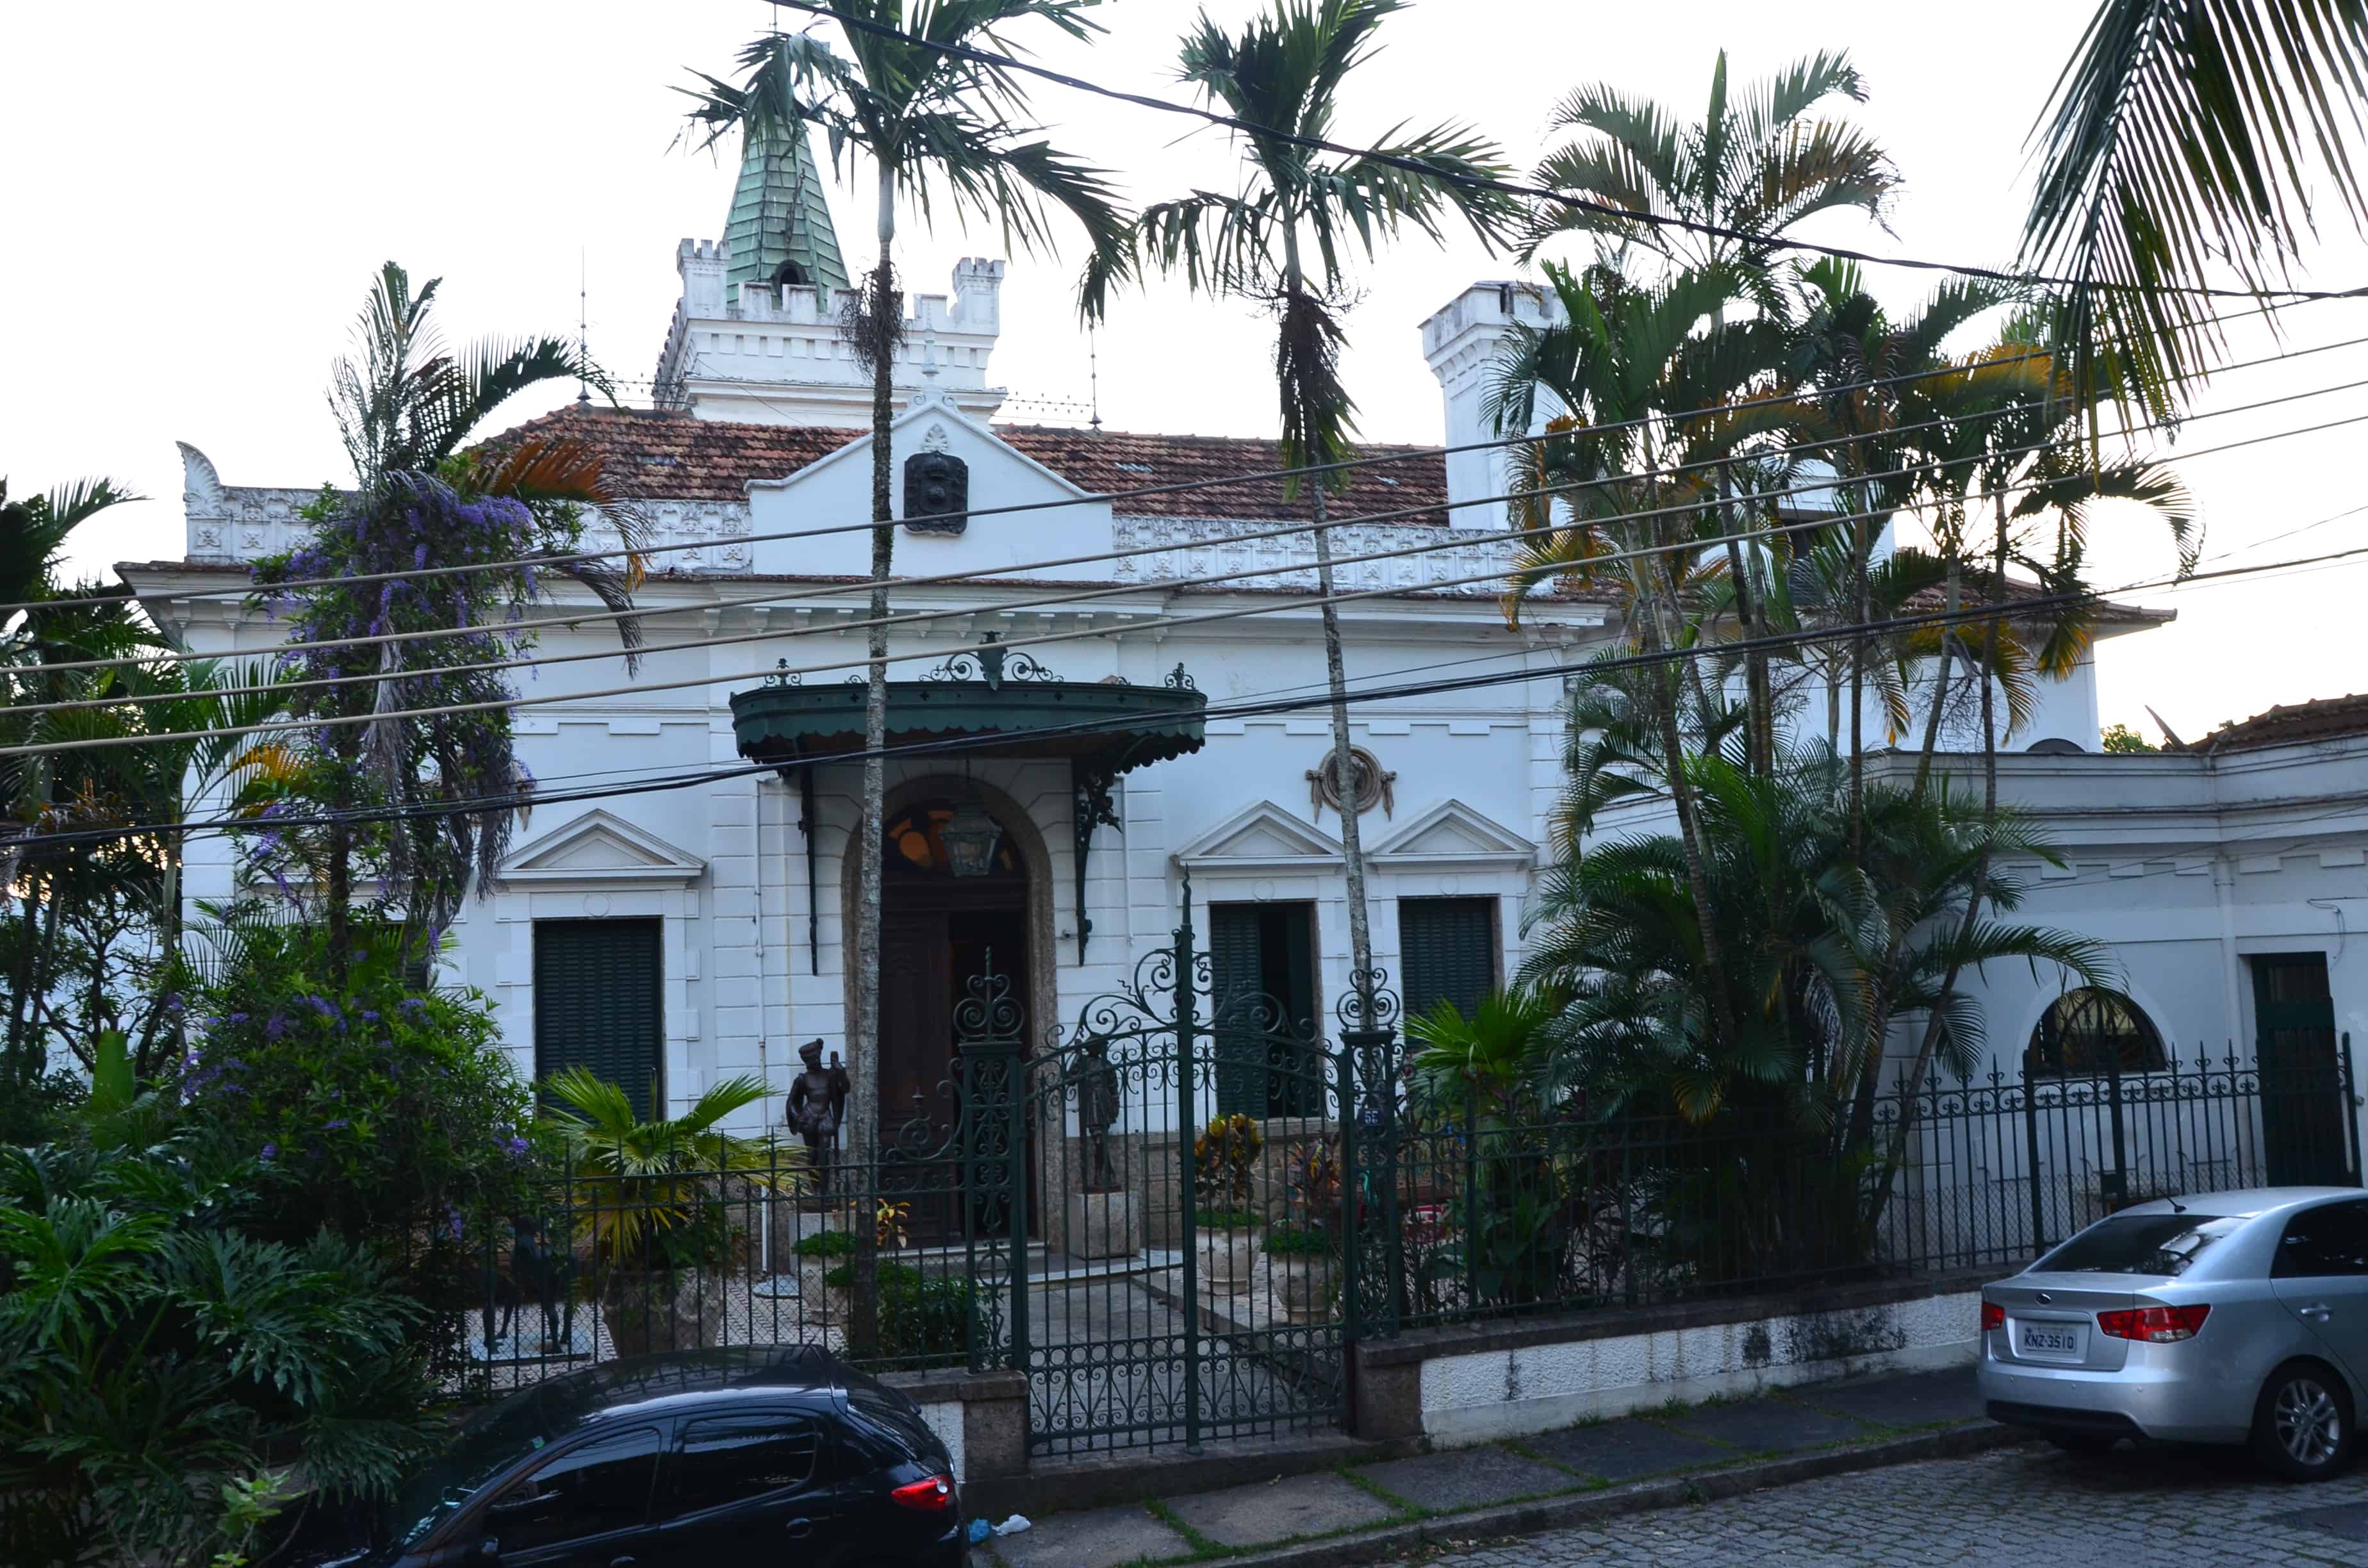 Mansion in Santa Teresa, Rio de Janeiro, Brazil